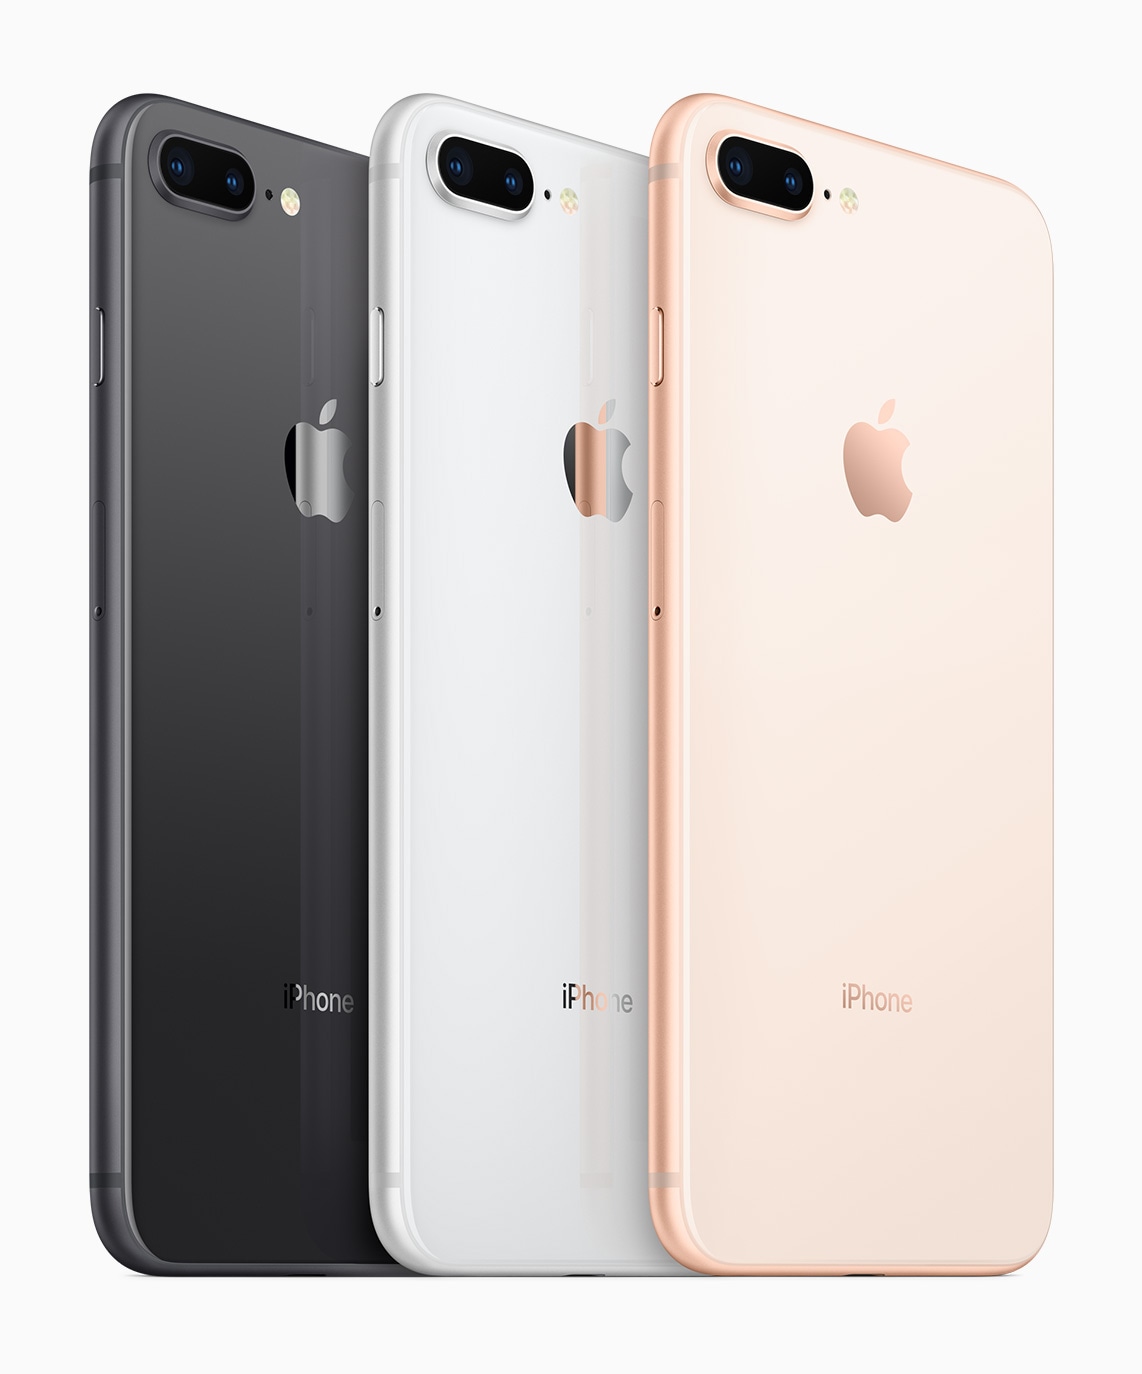 Semua warna iPhone 8 Plus dari belakang secara diagonal